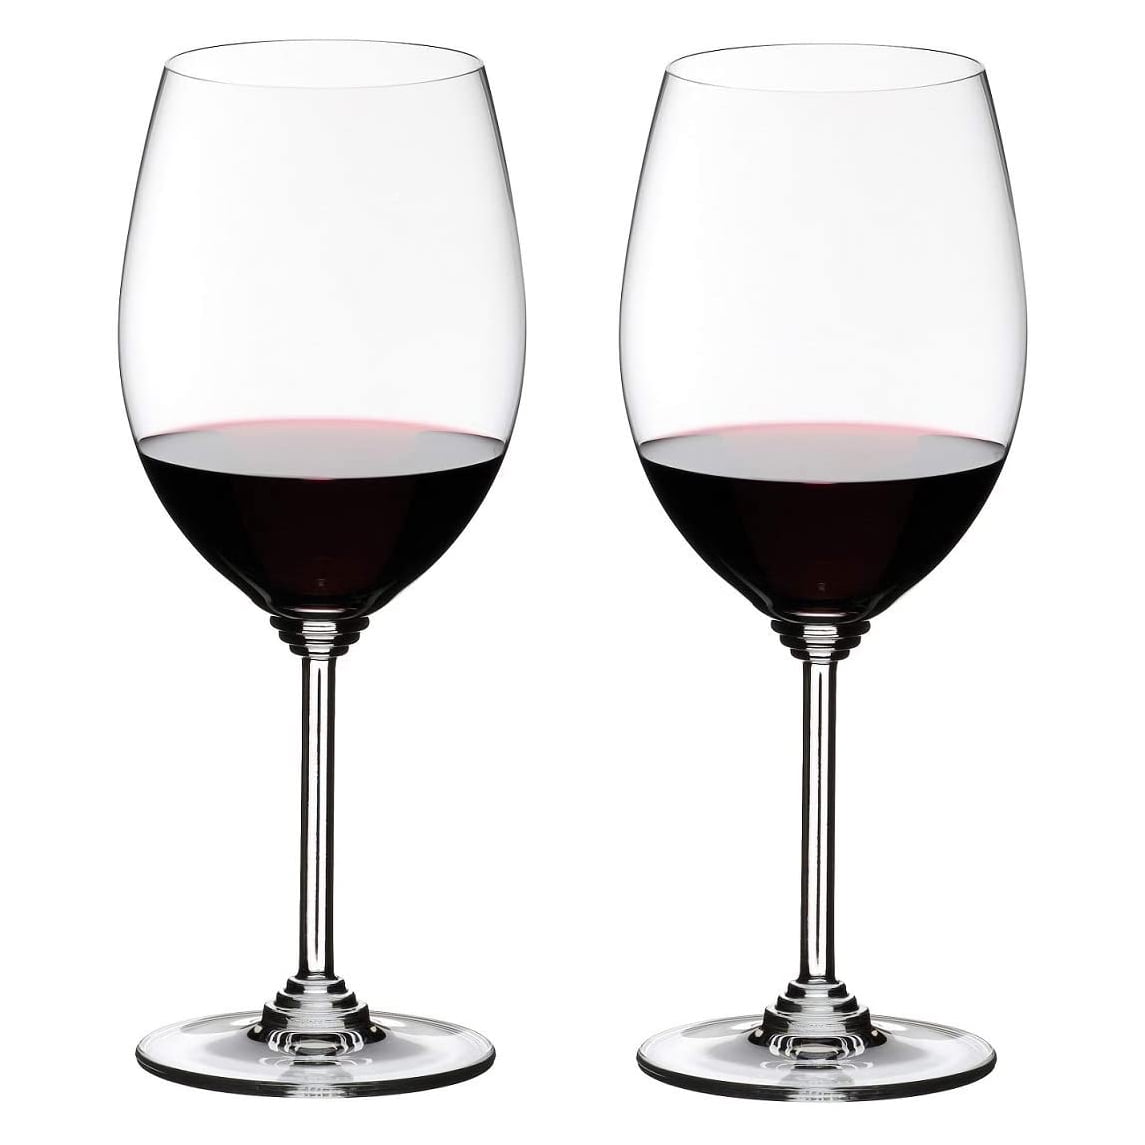 riedel wine glasses dishwasher safe